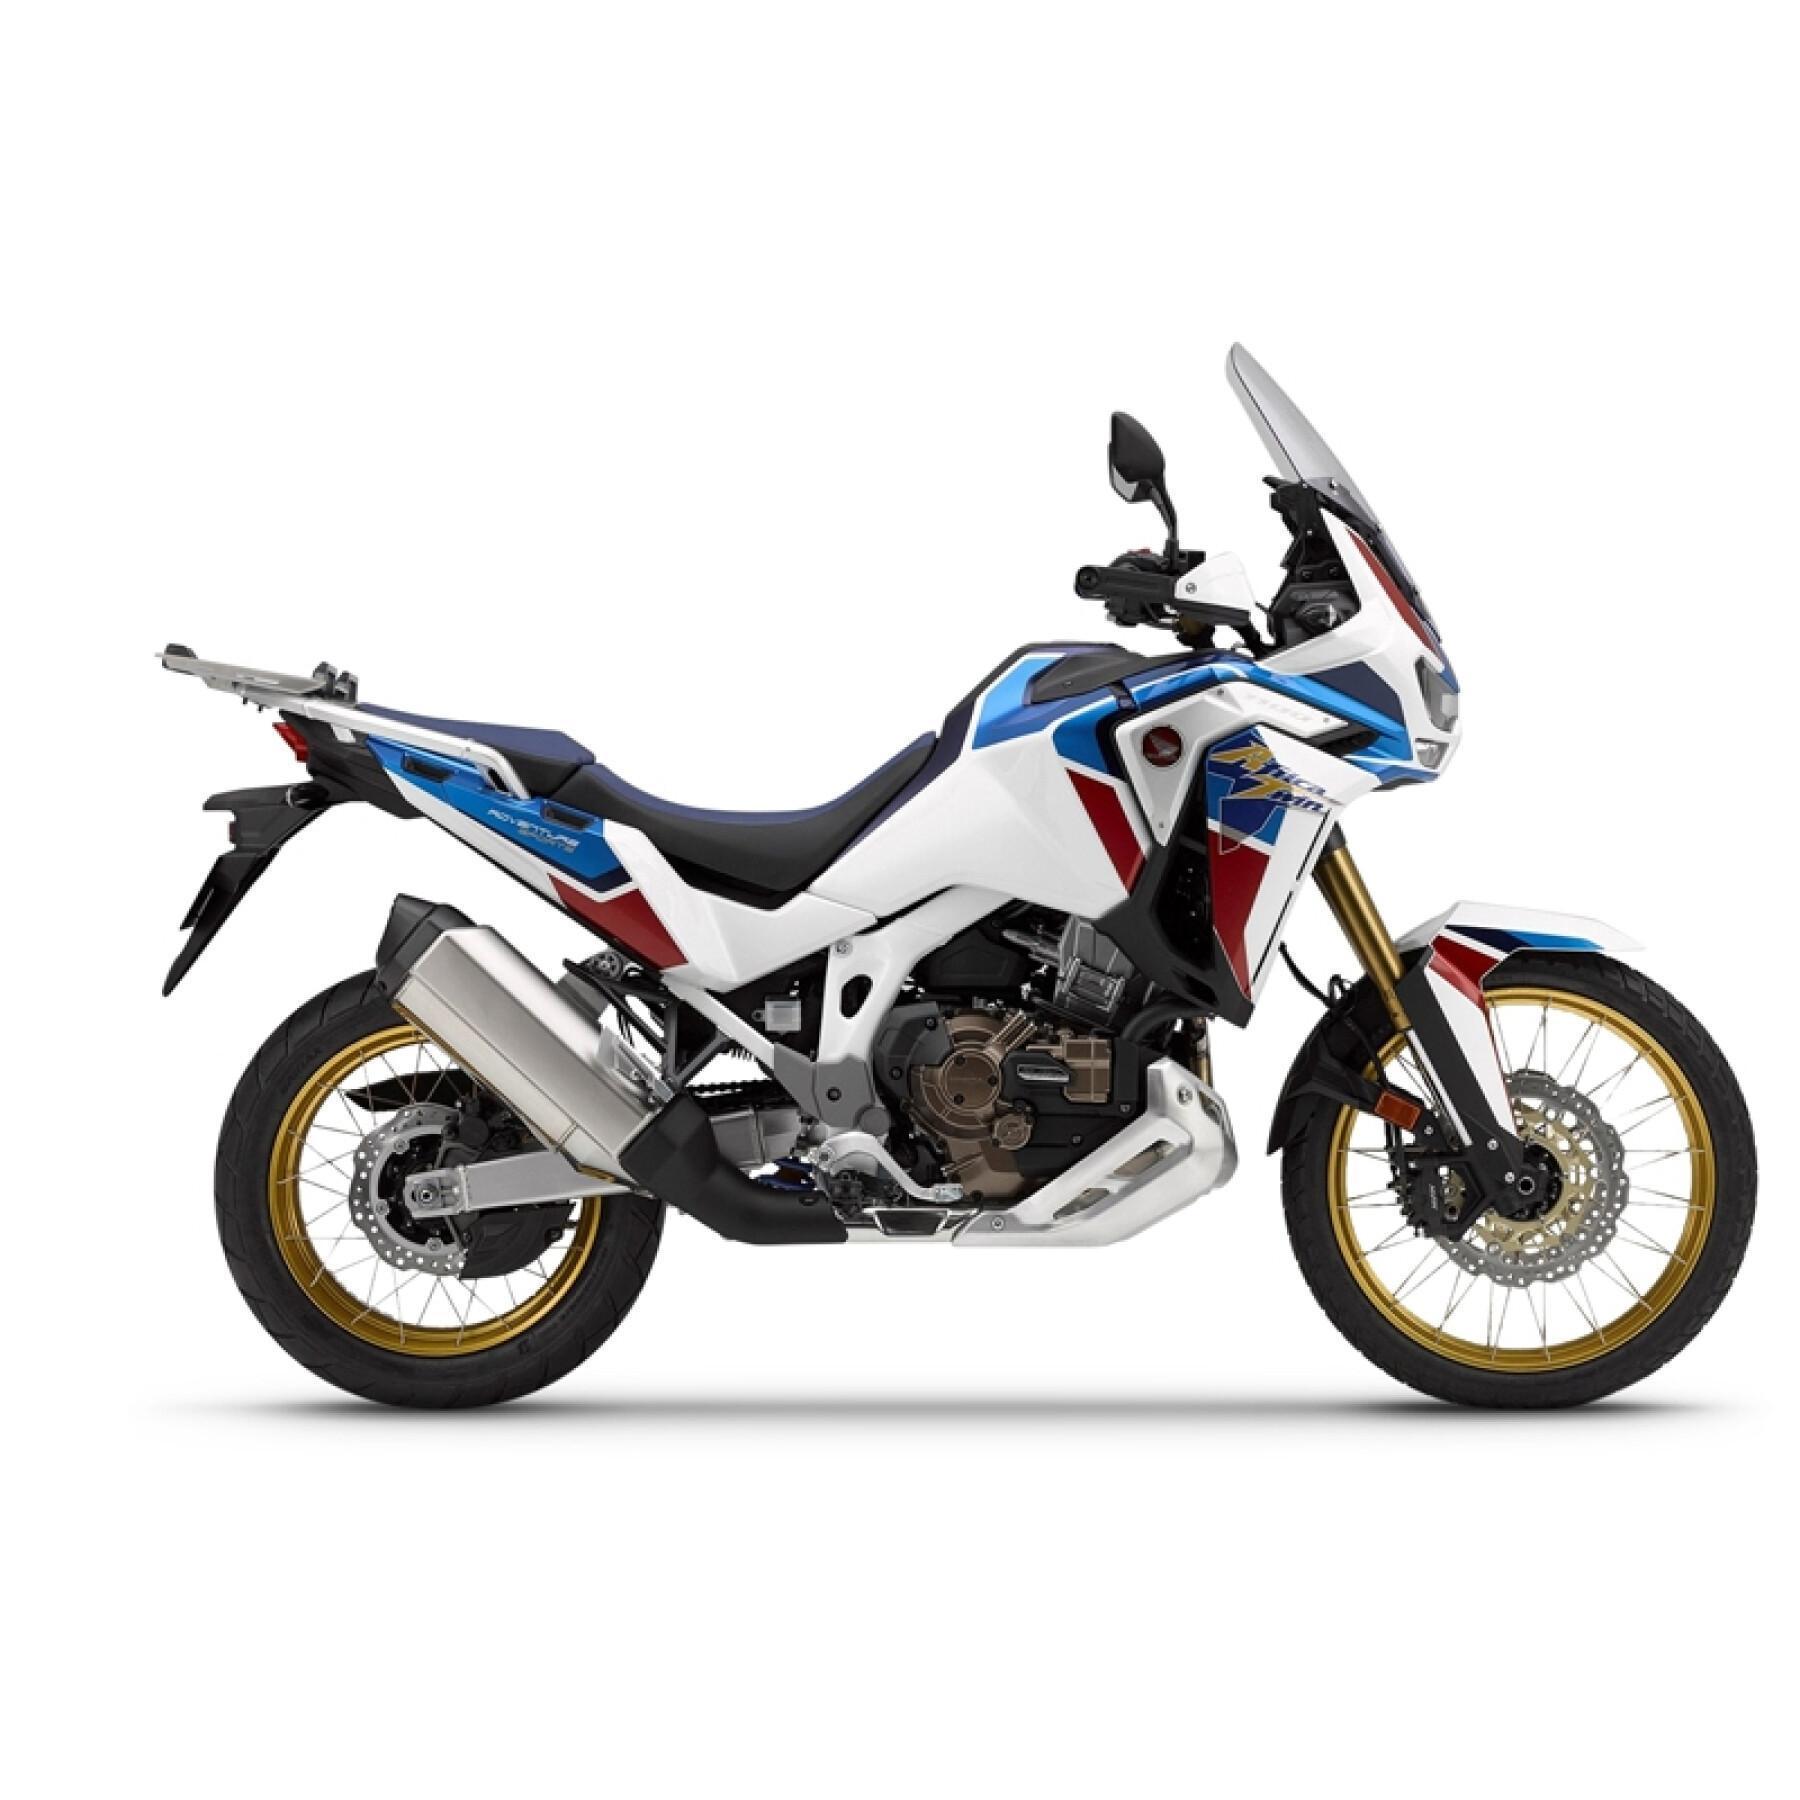 Soporte del baúl de la moto Shad Honda AFRICA TWIN CRF 1100L ADVENTURE SPORT 2020-2020